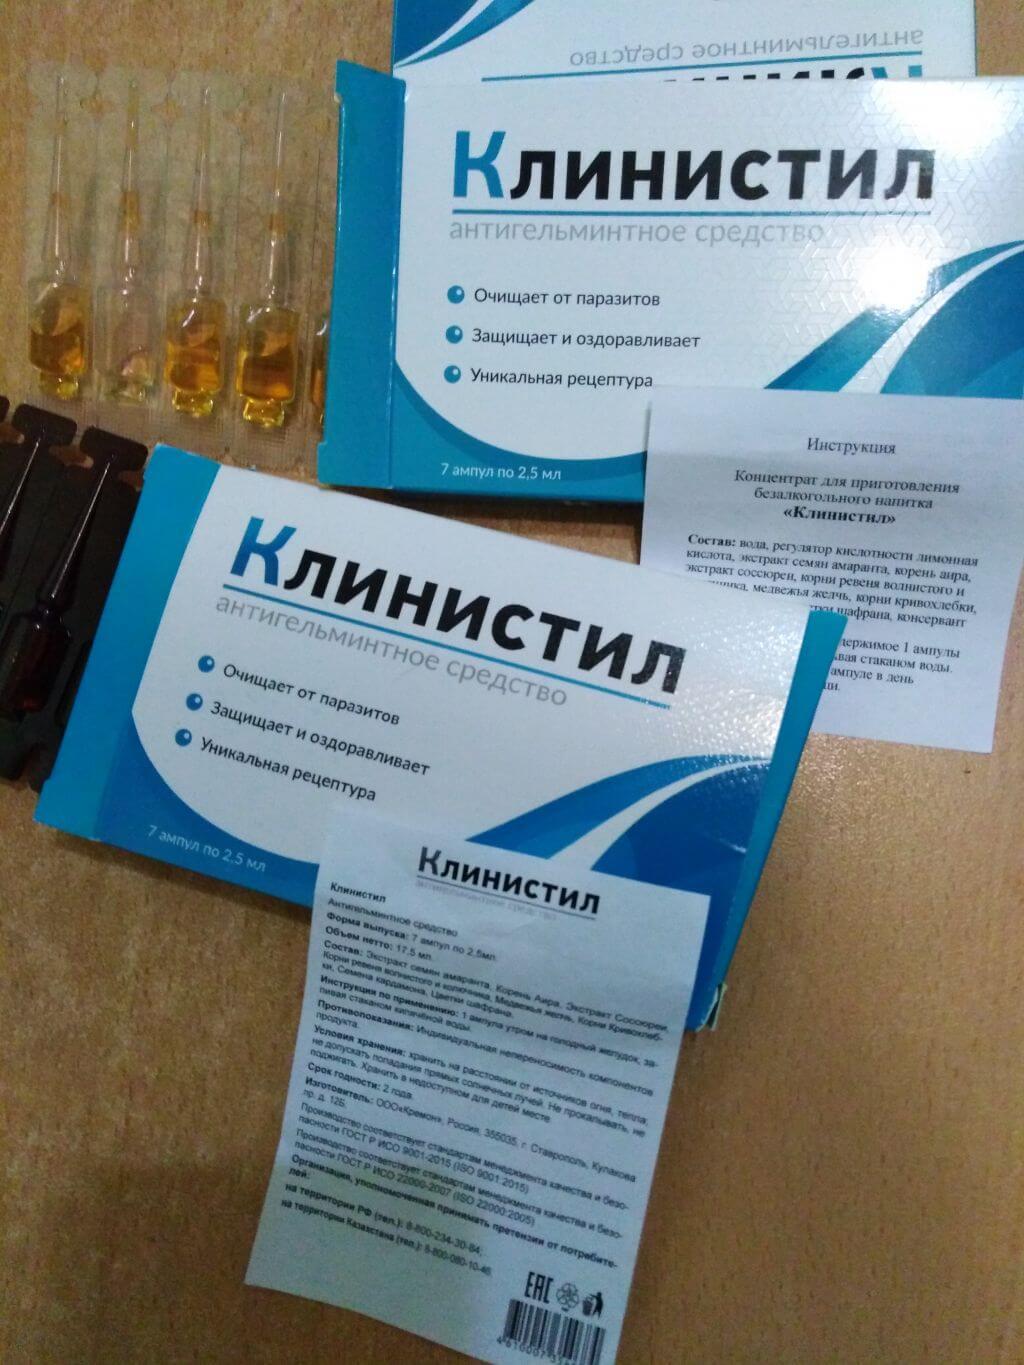 Цена на клинистил в Калининграде